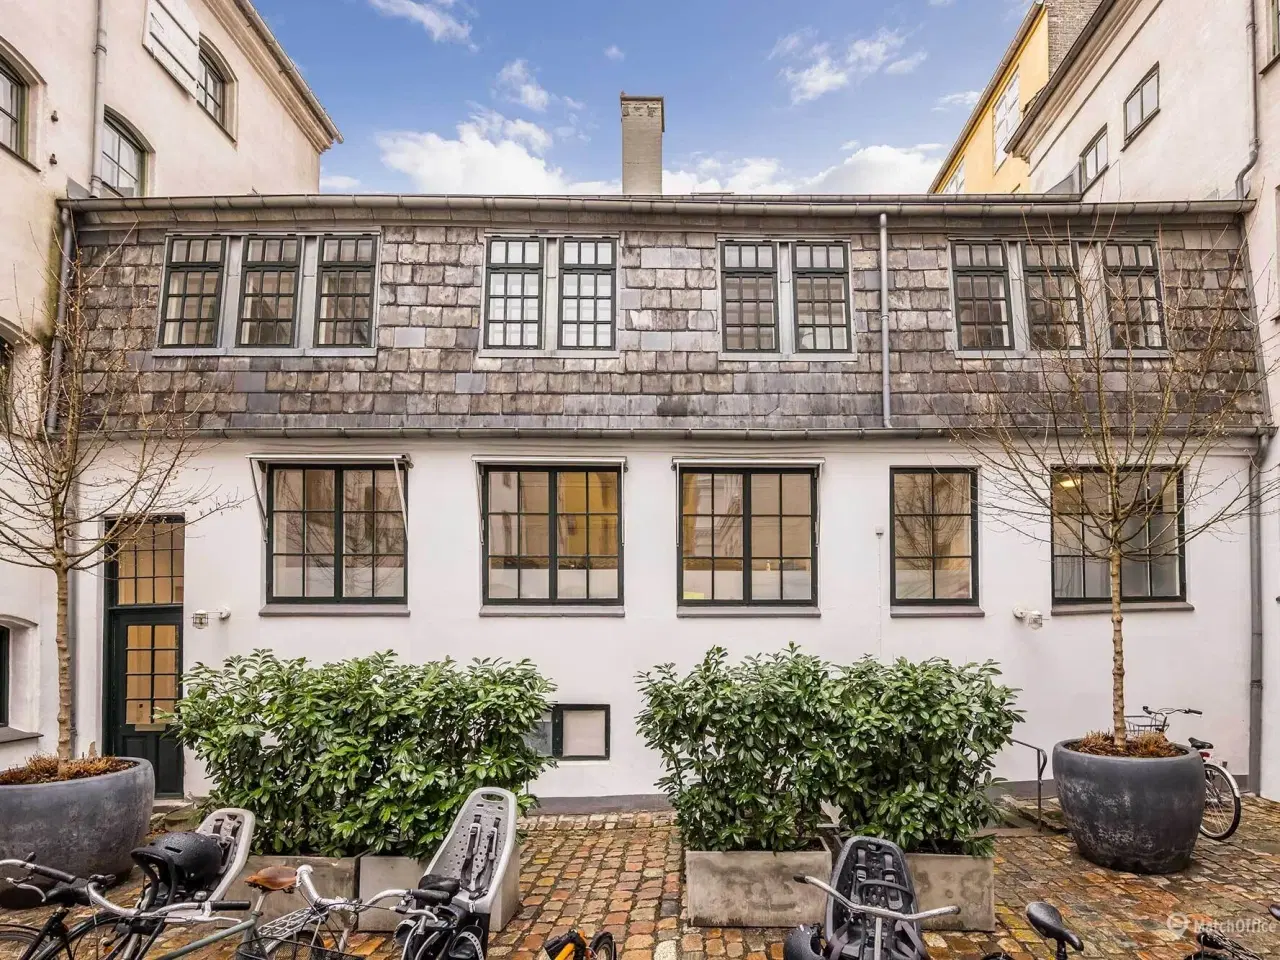 Billede 8 - Eksponeret pakhus med Street Art museum i stuen og 1. sal. Centralt beliggende ved Nyhavn og Ofelia plads.